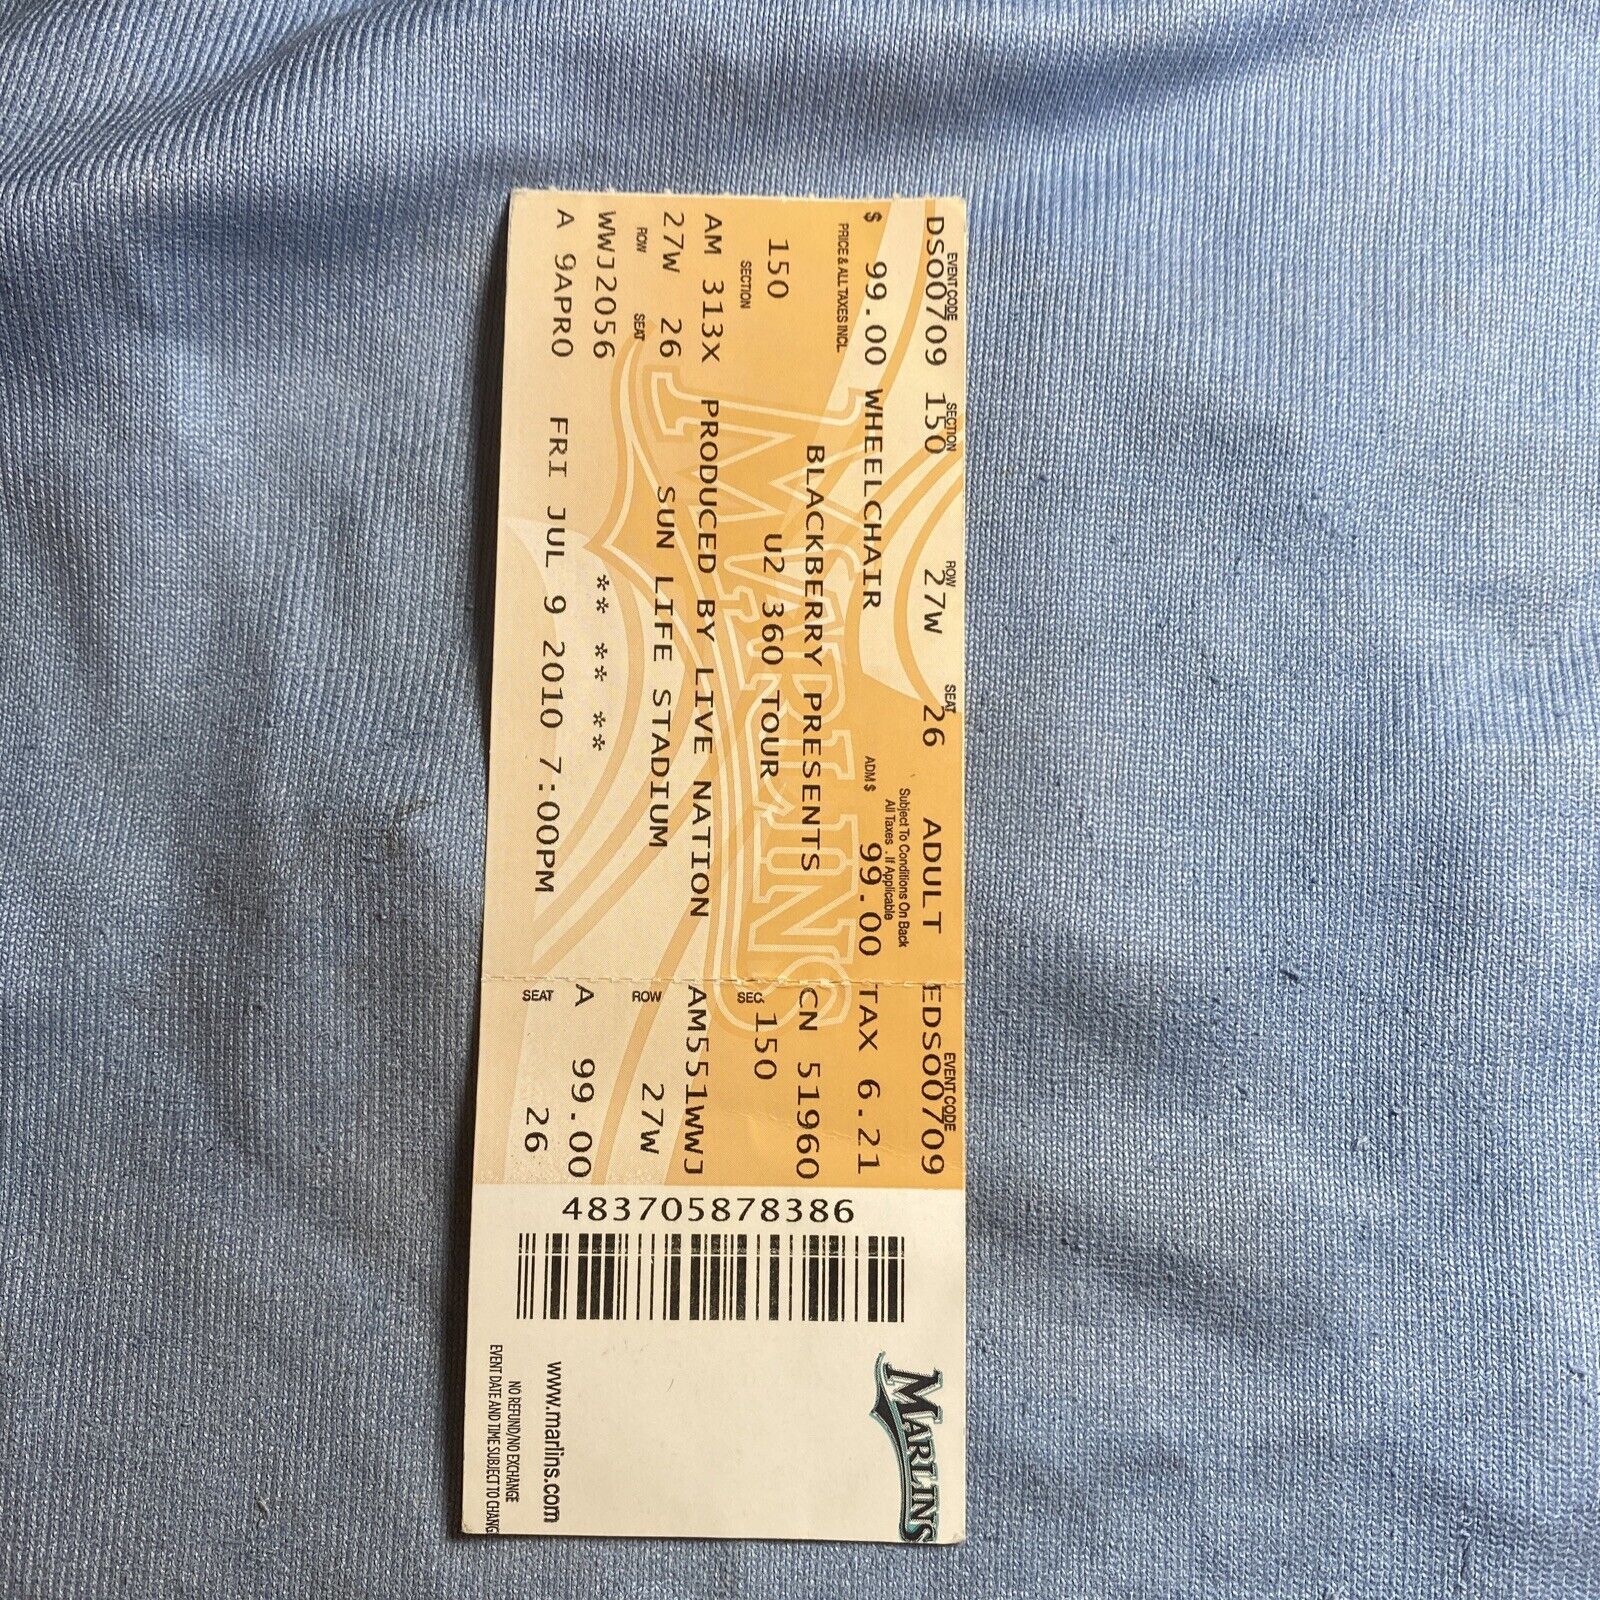 U2 Ticket Stub 2010 Florida Marlins Stadium Vintage 360 Tour